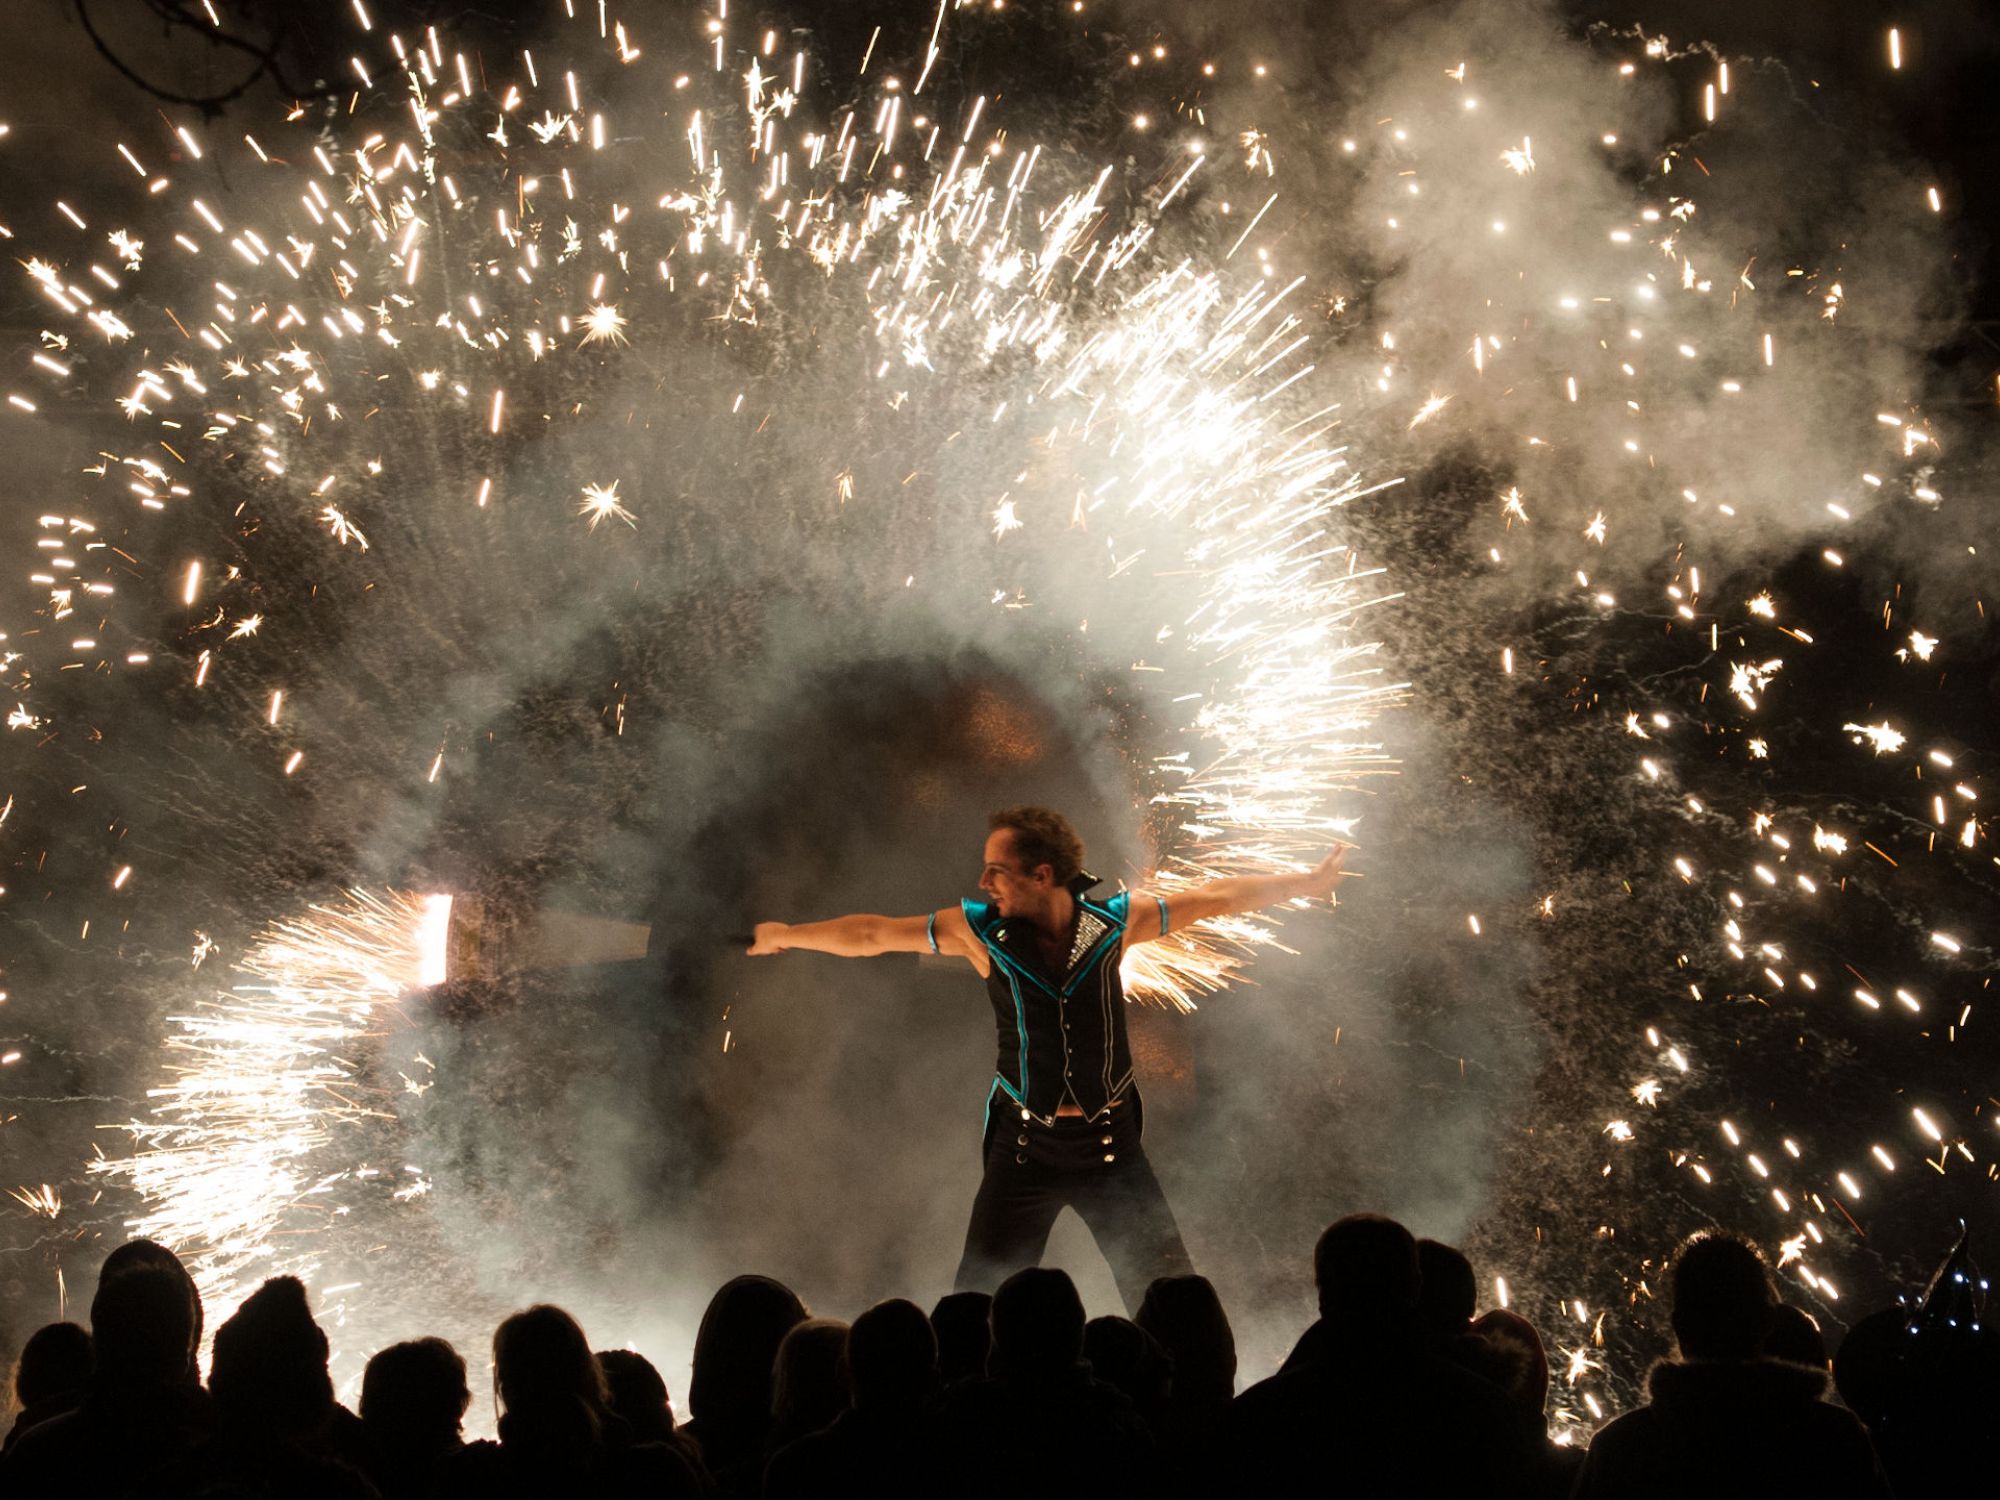 Pyrotechnik artistisch inszeniert zum Finale einer Feuershow